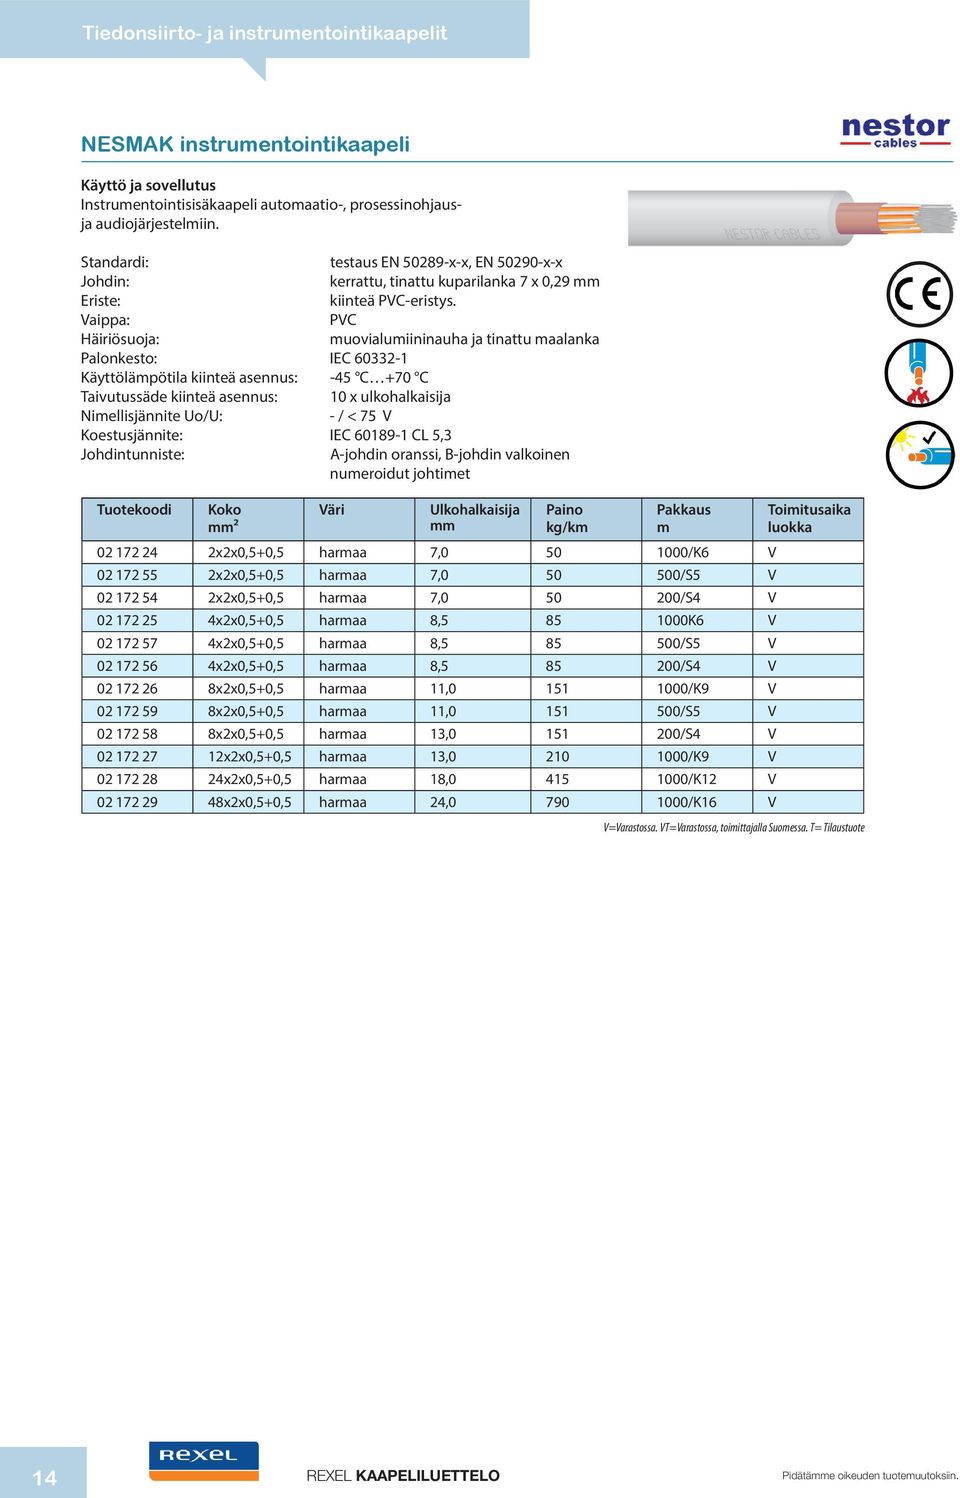 PVC Häiriösuoja: uovialuiininauha ja tinattu aalanka Palonkesto: IEC 60332-1 Käyttöläpötila kiinteä asennus: -45 C +70 C Taivutussäde kiinteä asennus: 10 x ulkohalkaisija Niellisjännite Uo/U: - / <